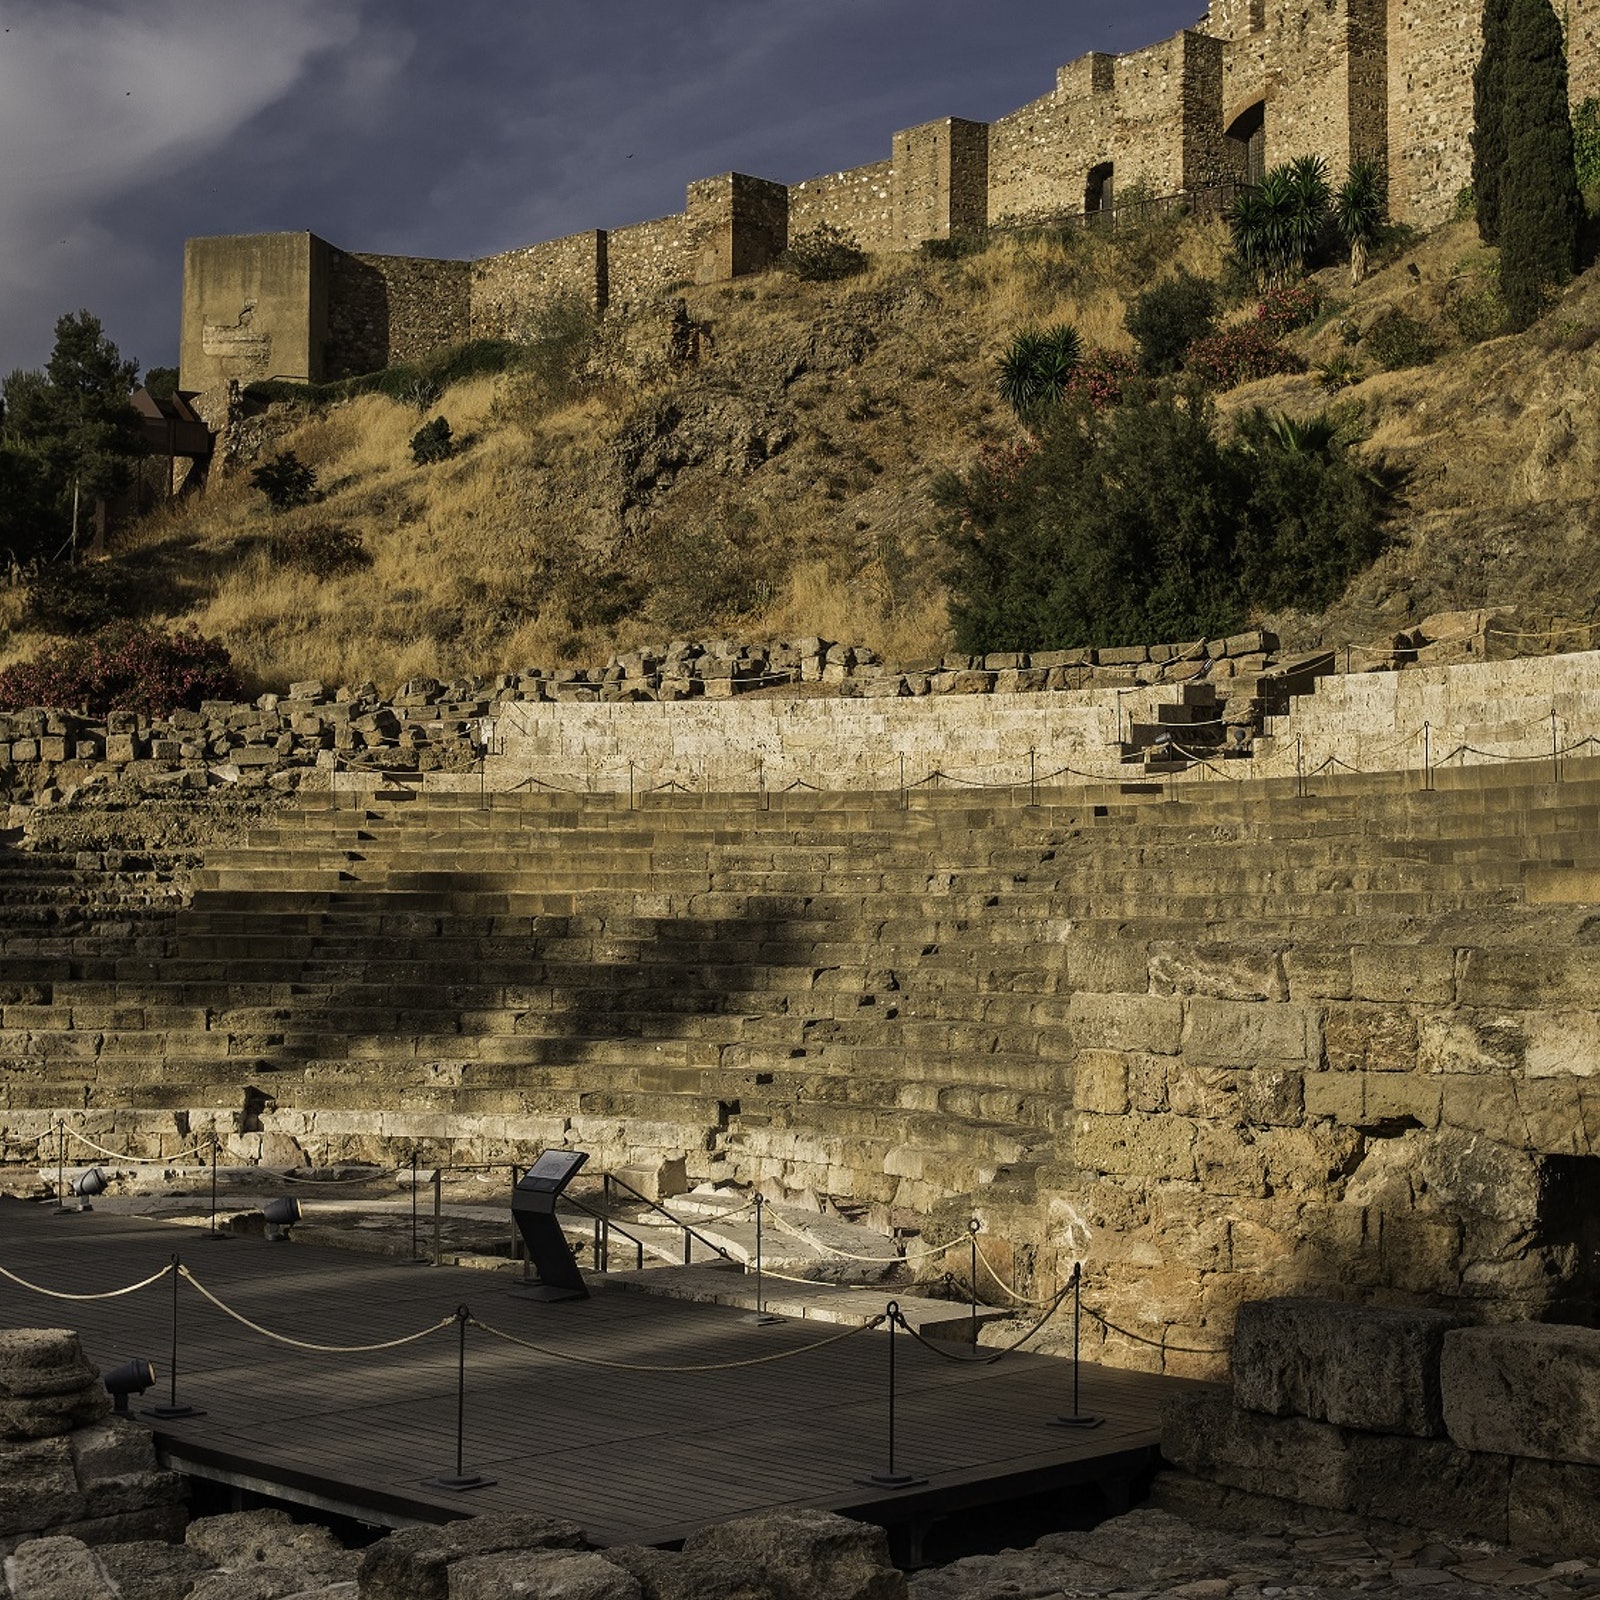 Málaga Roman Theatre & Alcazaba: Guided Tour in Spain